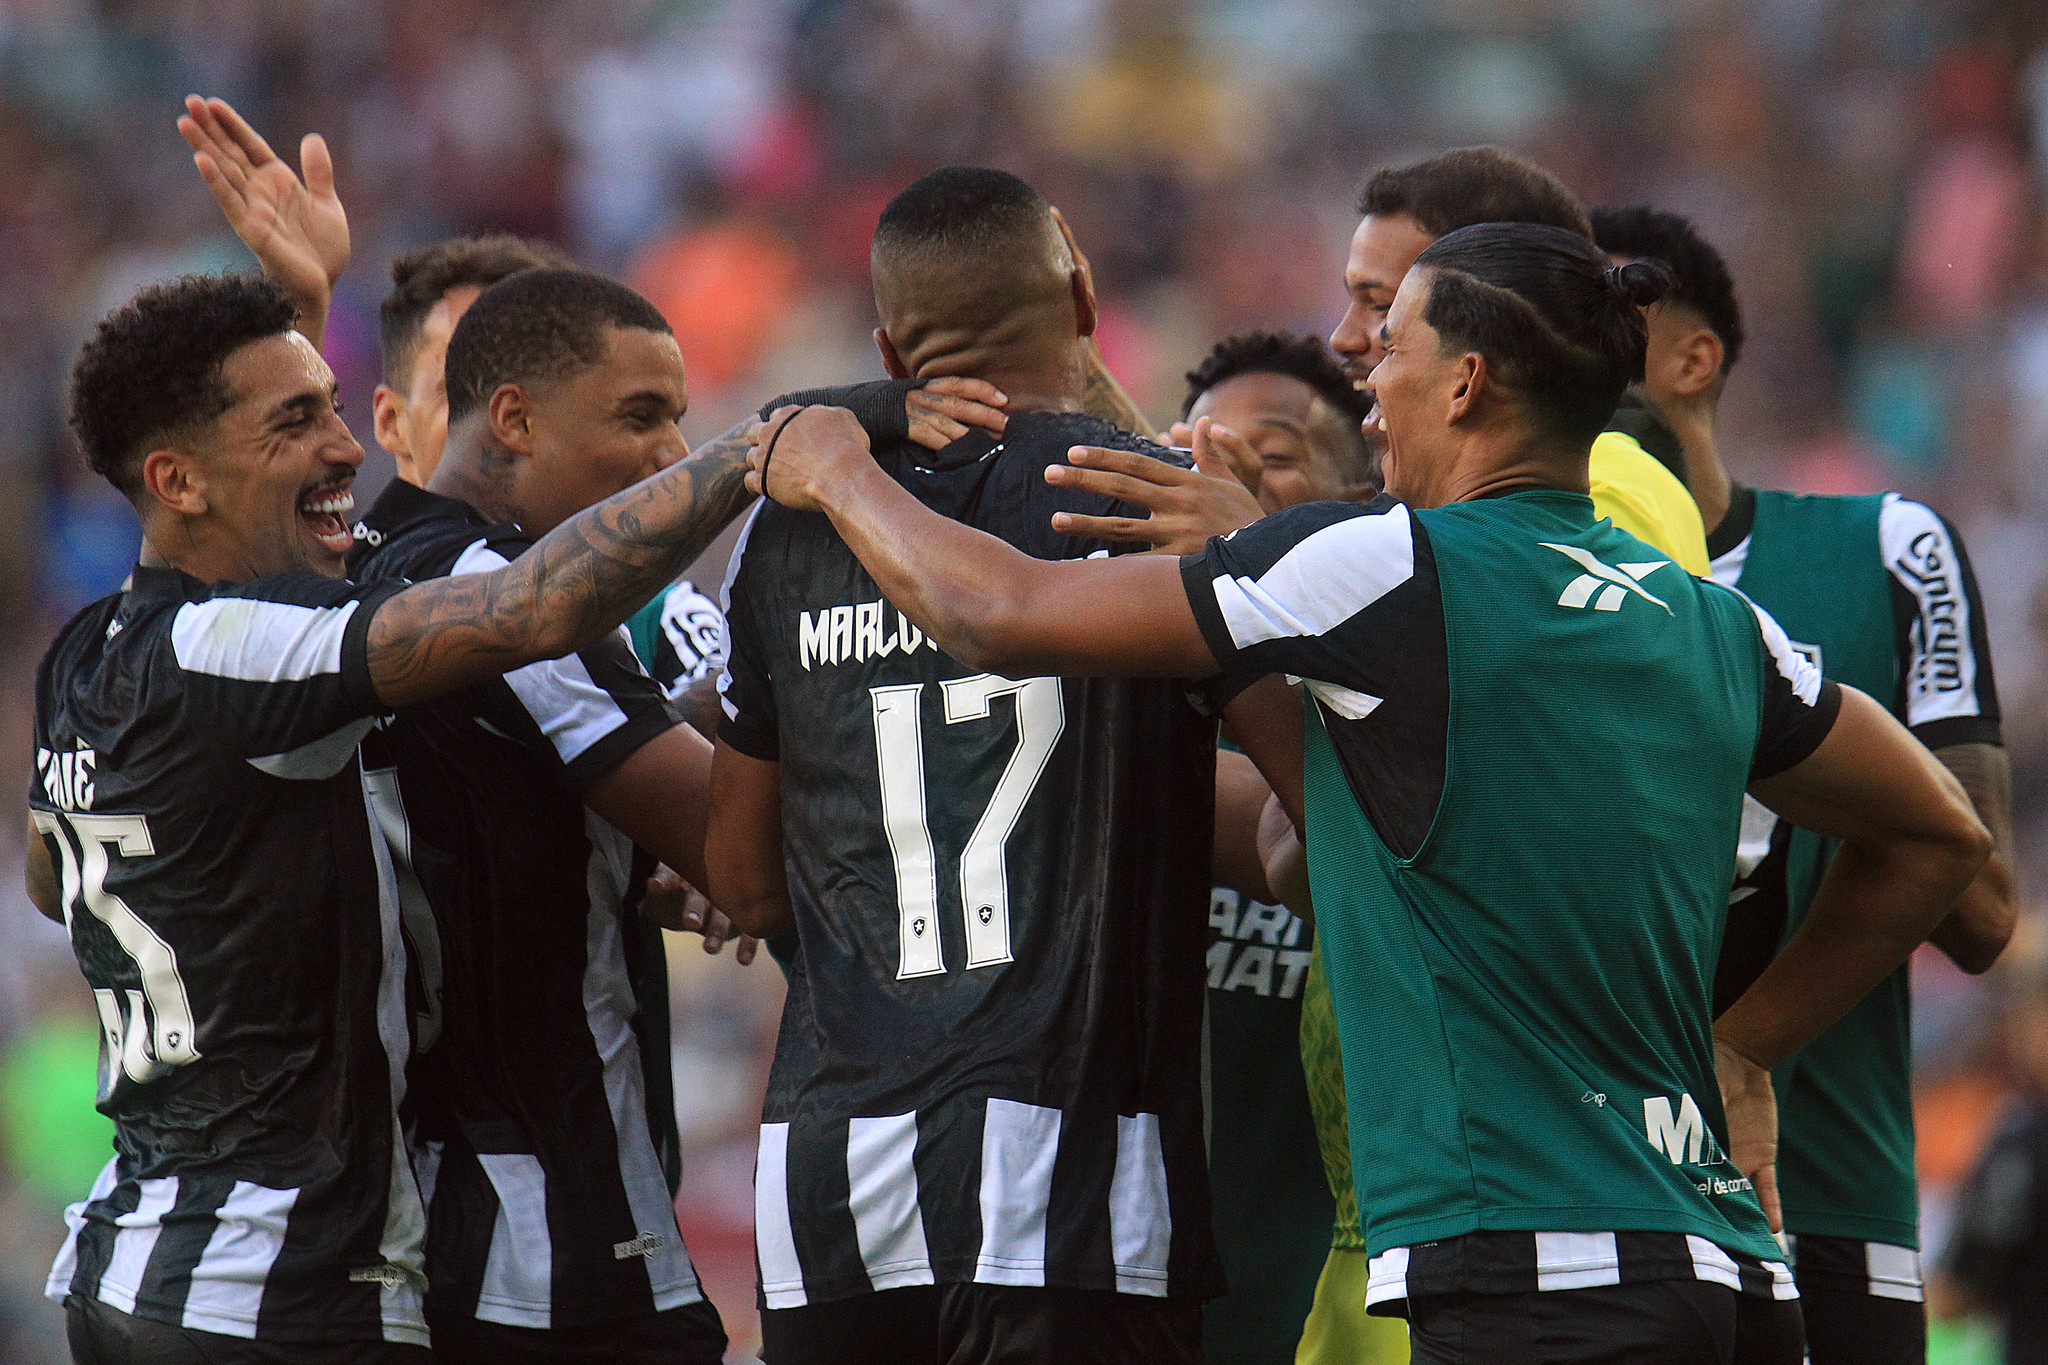 Jogadores do Botafogo comemorando um dos gols de Marlon Freitas. (Foto: Vitor Silva/Botafogo)